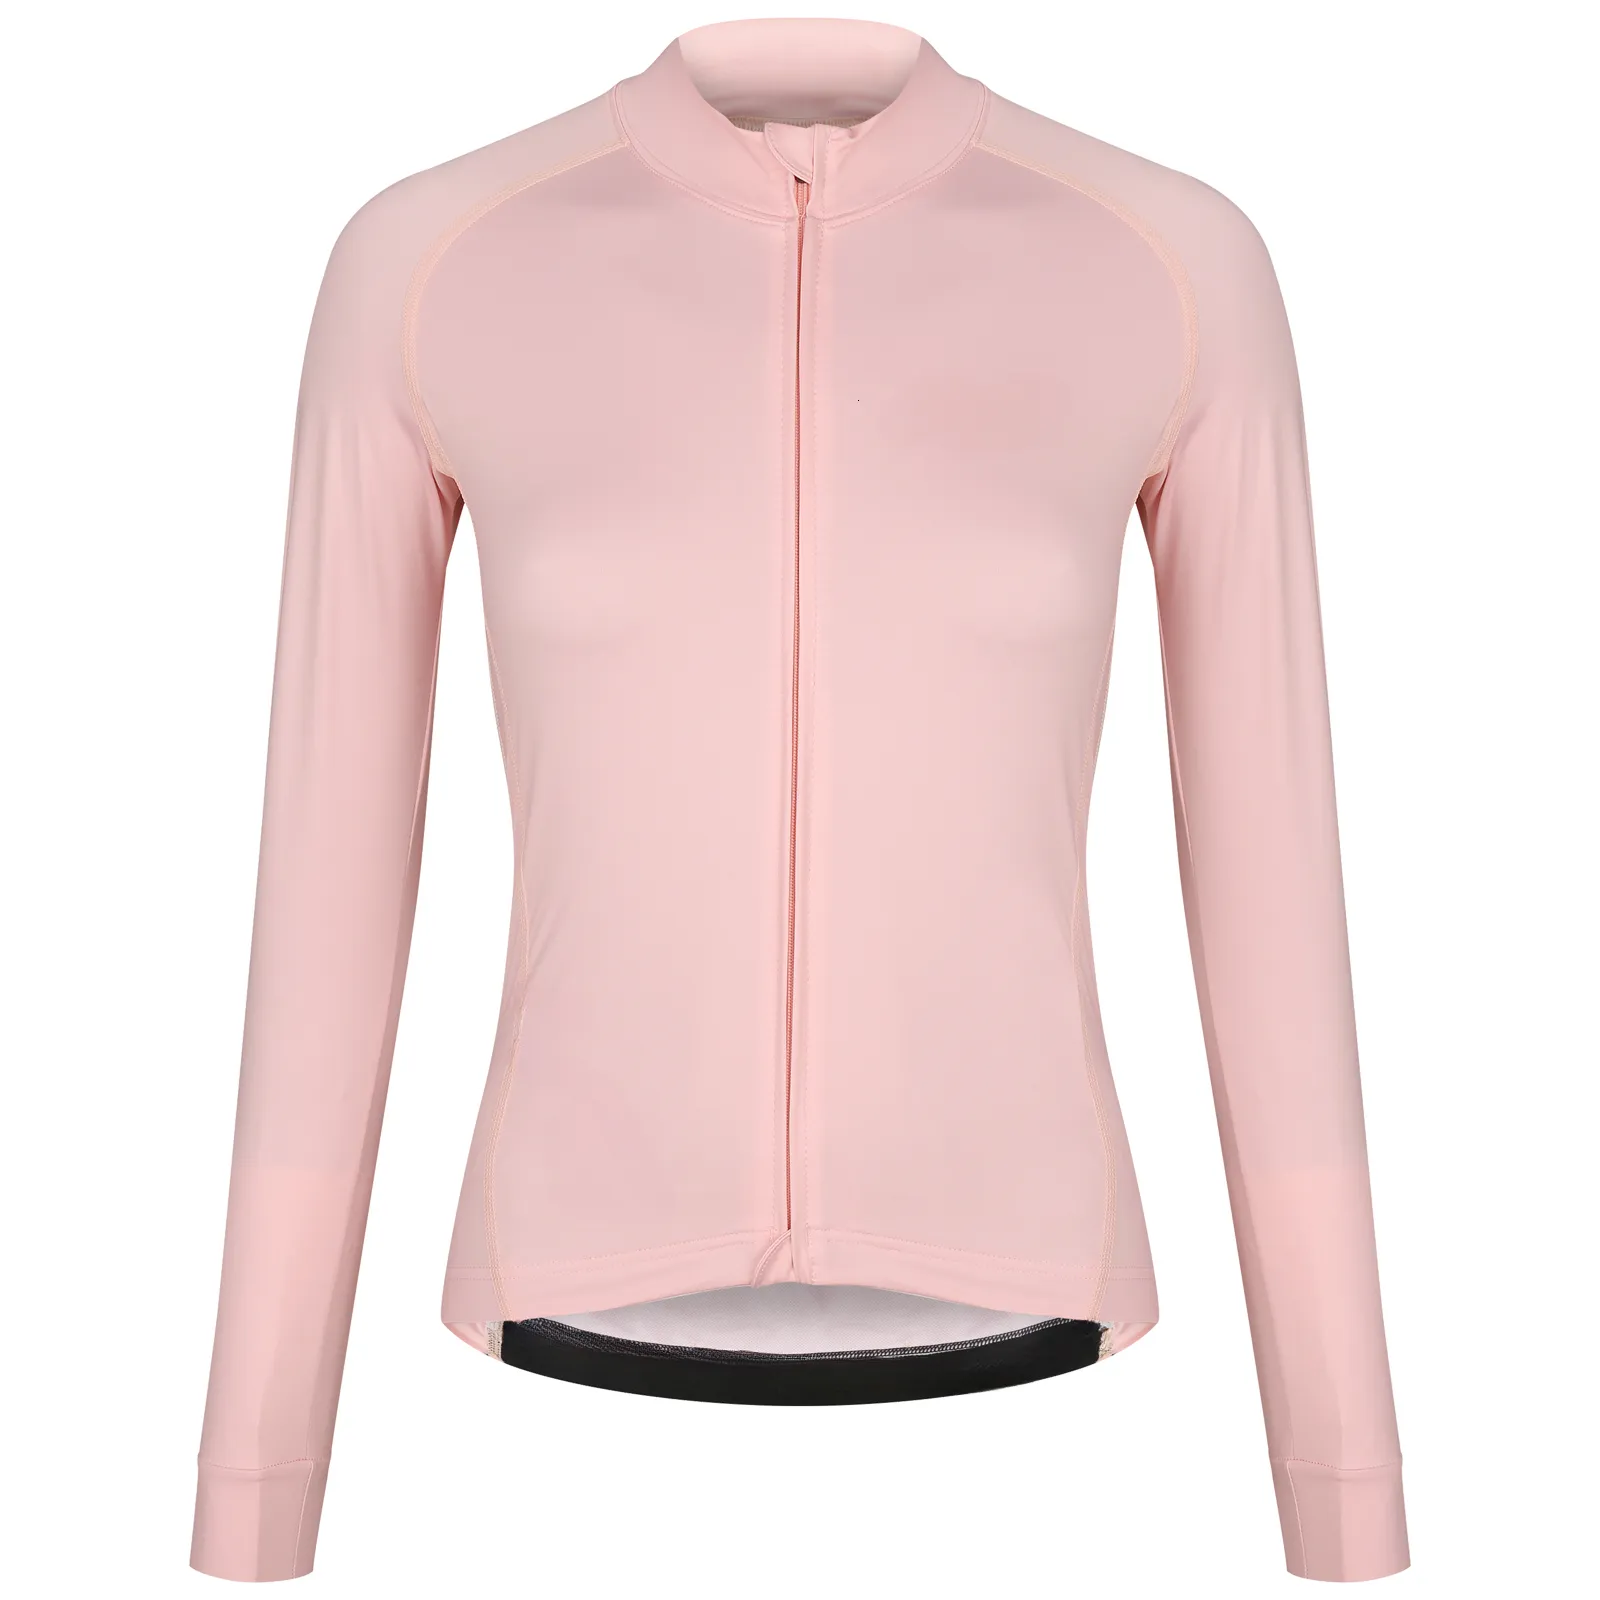 Cyclisme dessus de chemise femmes maillot à manches longues printemps et automne vélo course mince veste Roupa Ciclismo 230907